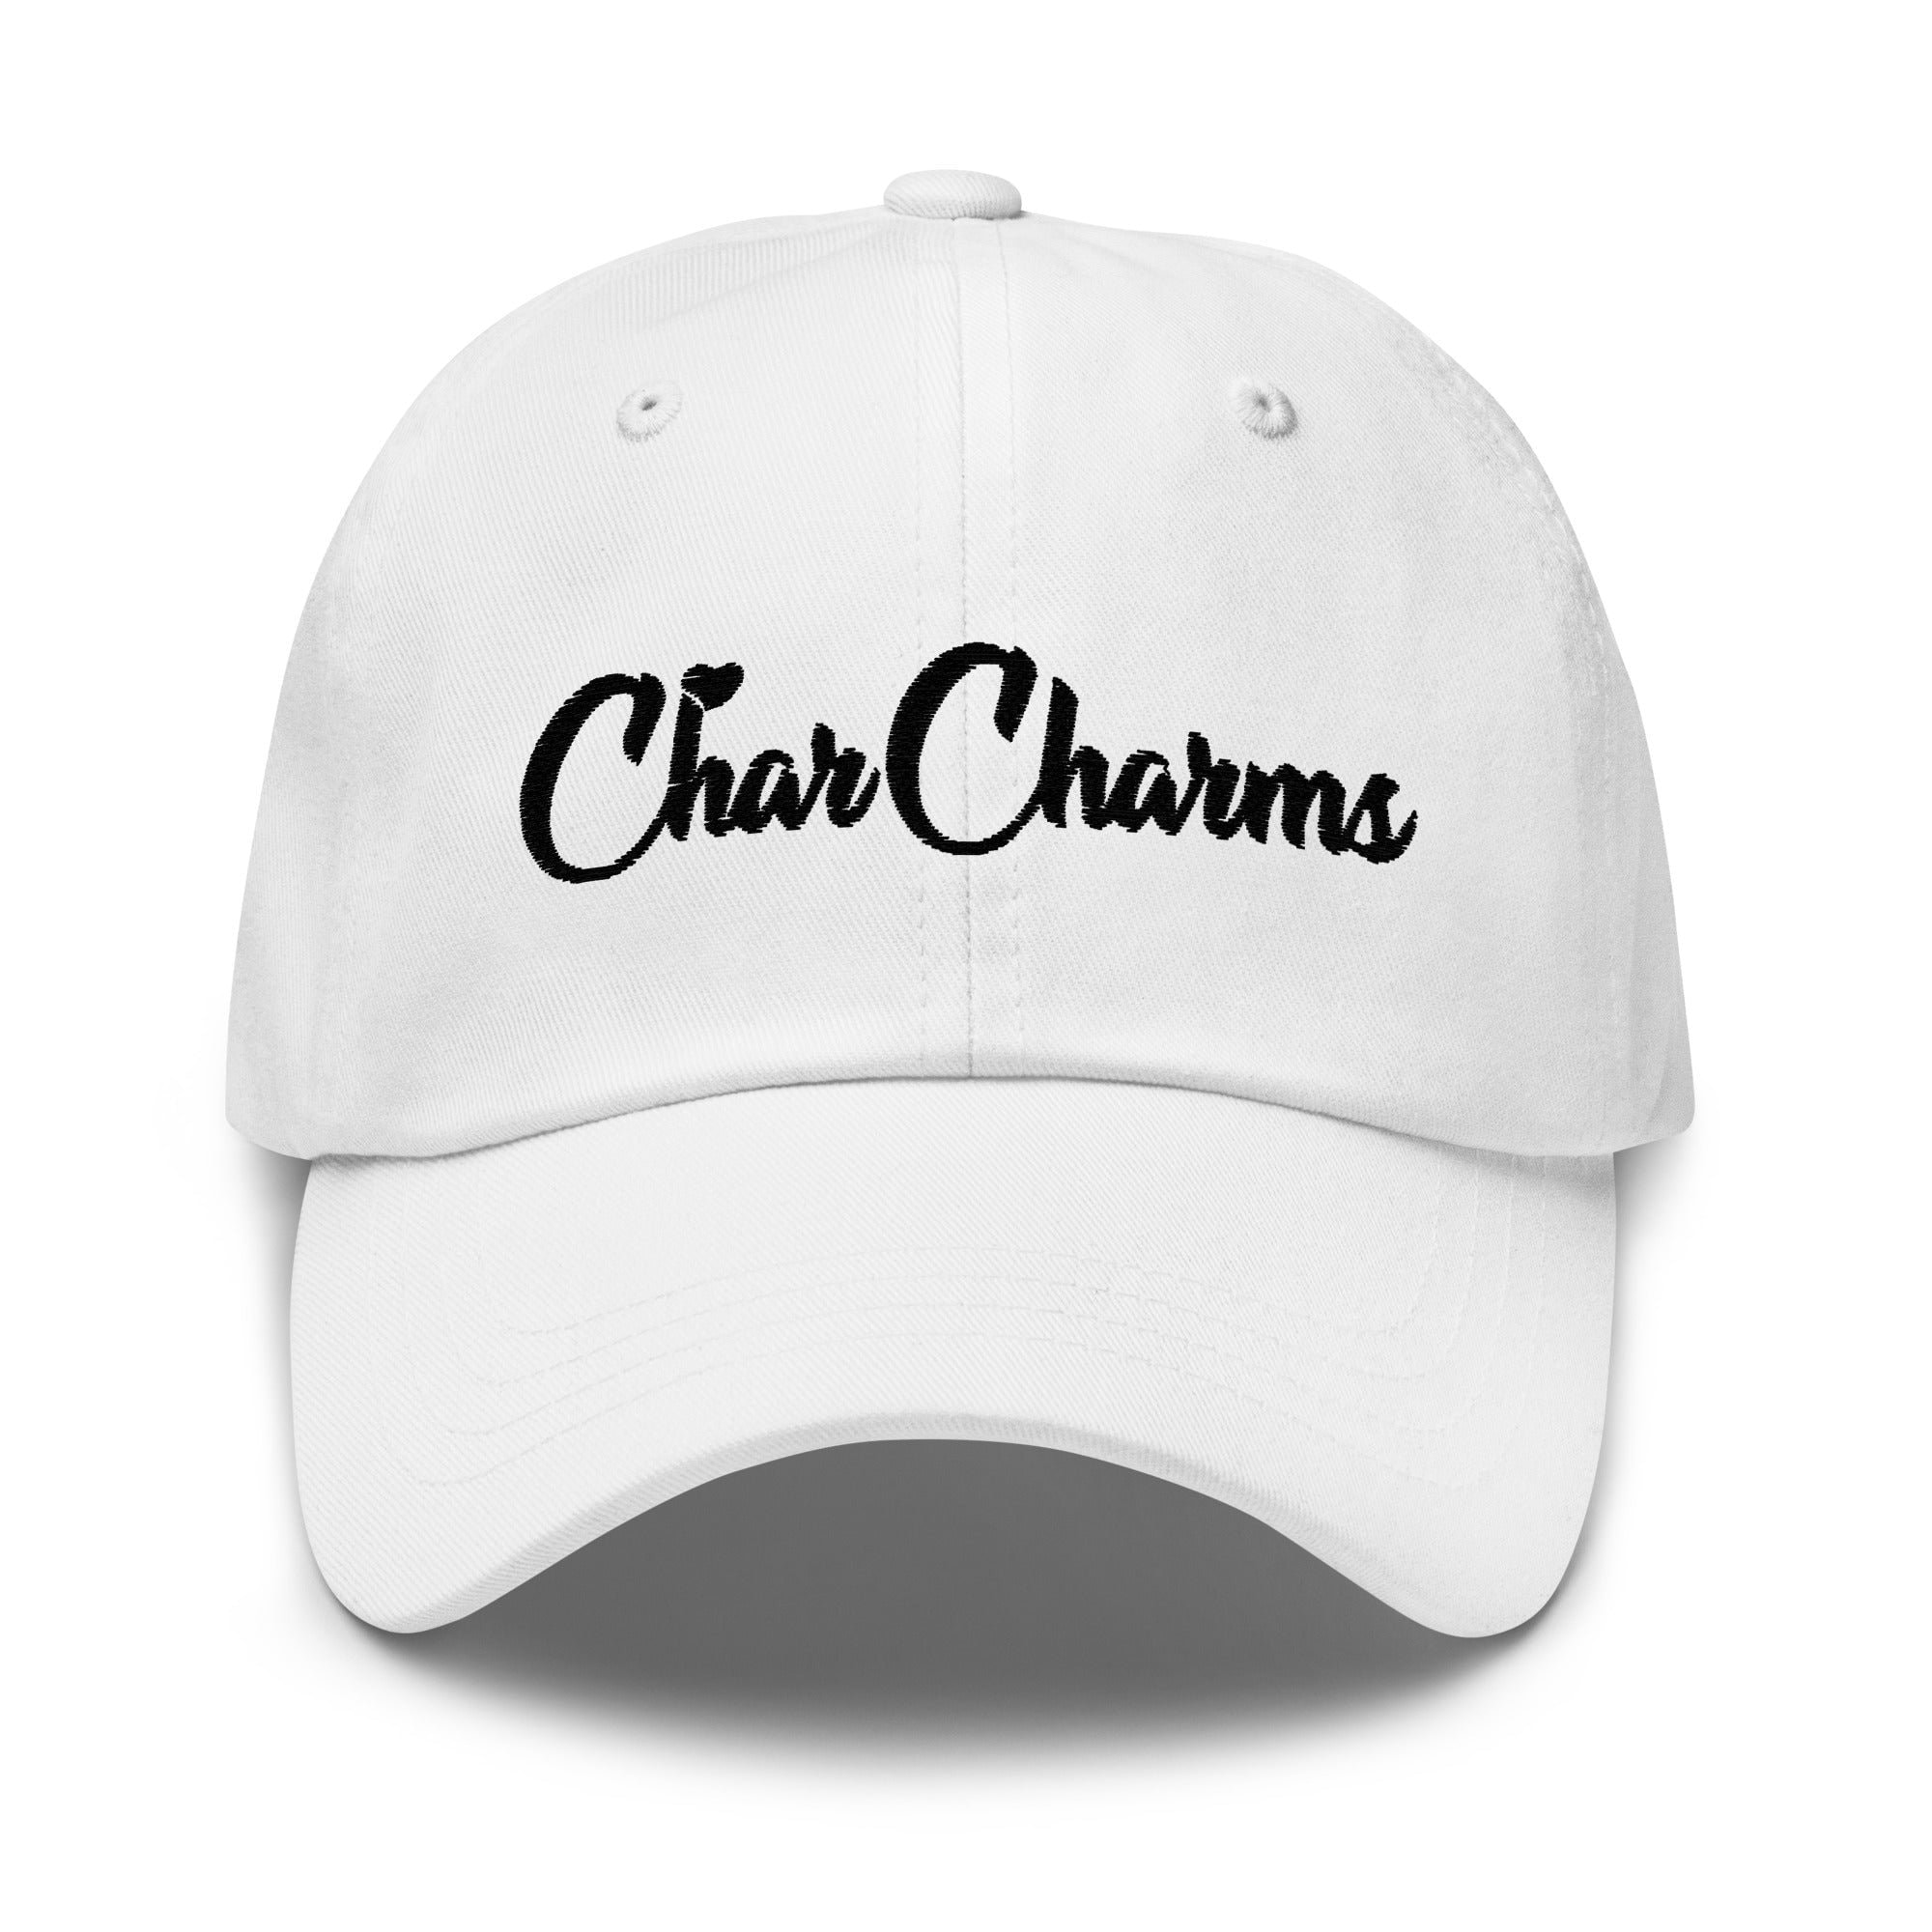 Char charms｜TikTok Search